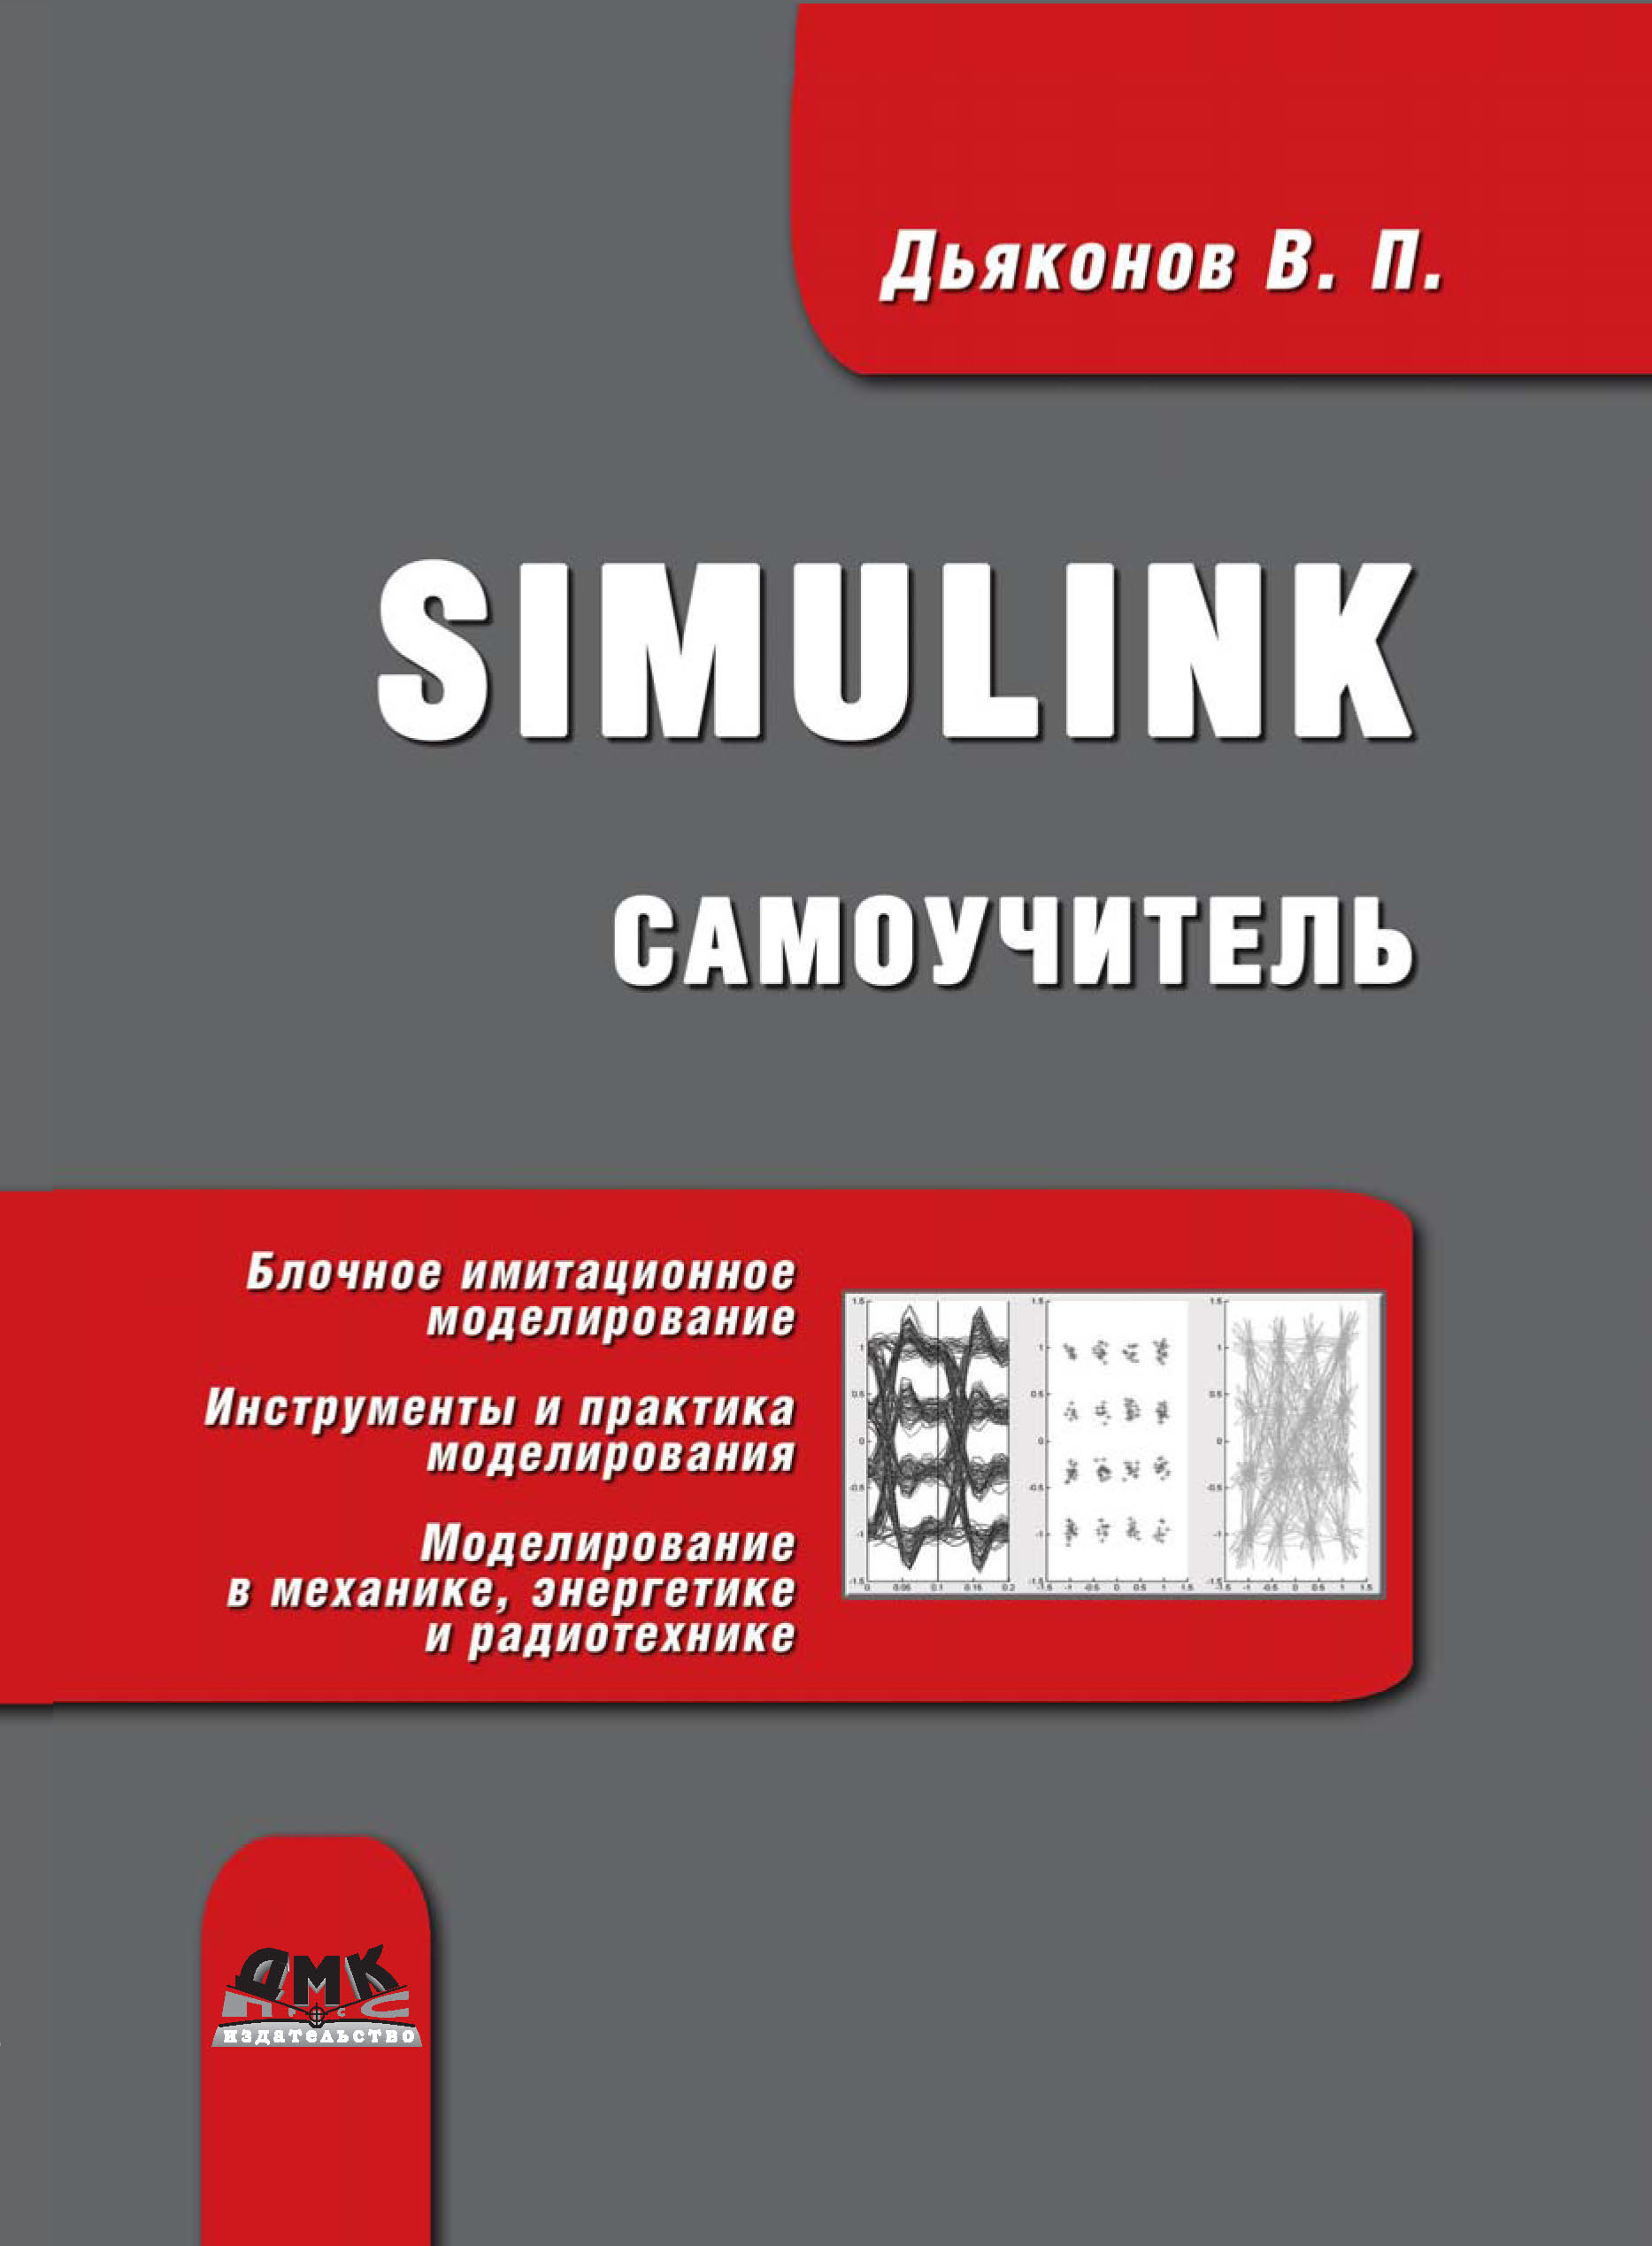 Книга  Simulink. Самоучитель созданная В. П. Дьяконов может относится к жанру математика, программы, техническая литература. Стоимость электронной книги Simulink. Самоучитель с идентификатором 6283701 составляет 479.00 руб.